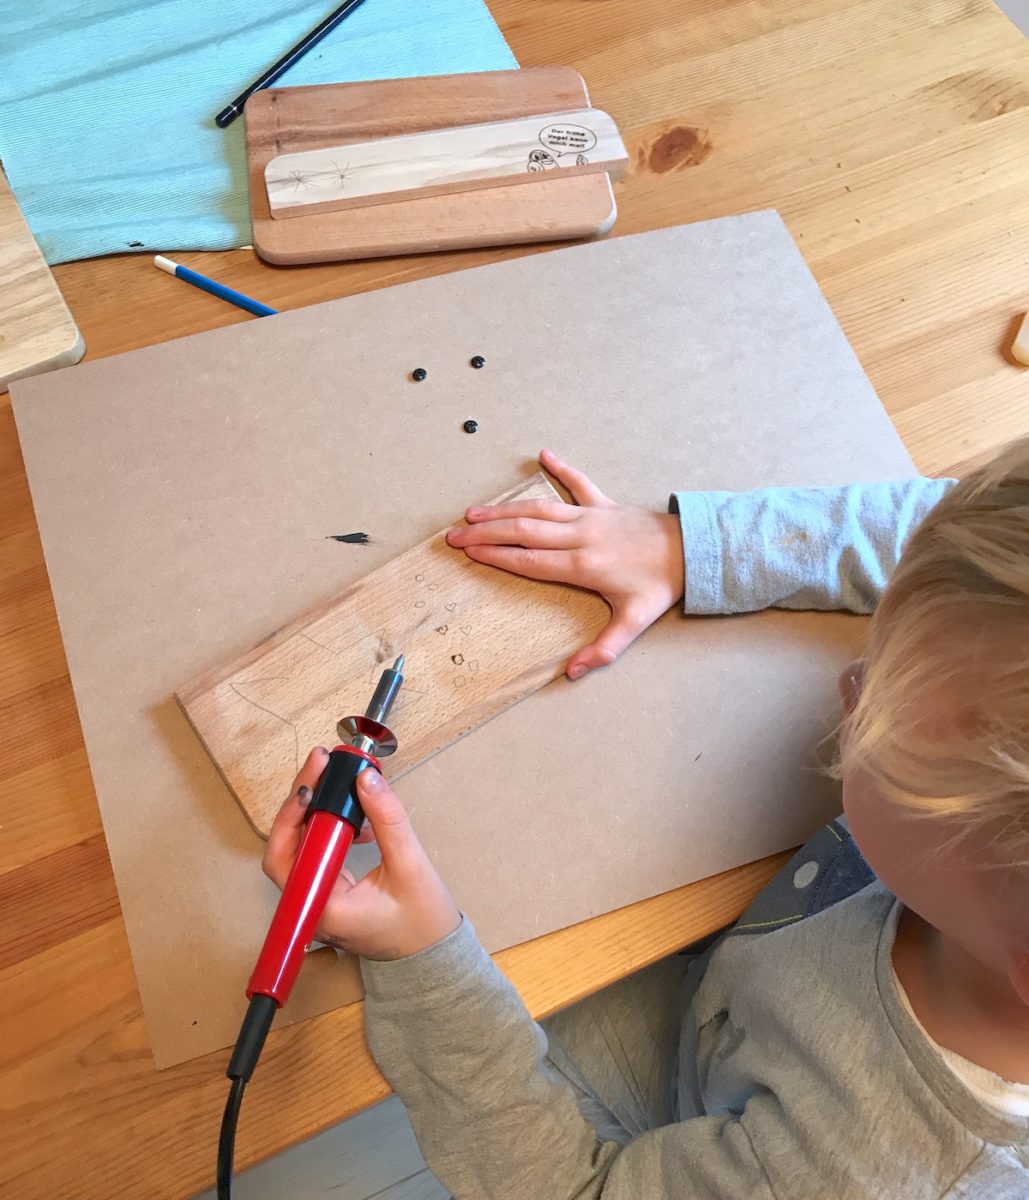 Der 5-Jährige brennt kleine Herzen und einen Stern in sein Brett. - Holz gravieren macht Spaß mit Kindern! Mehr Infos auf Mamaskind.de